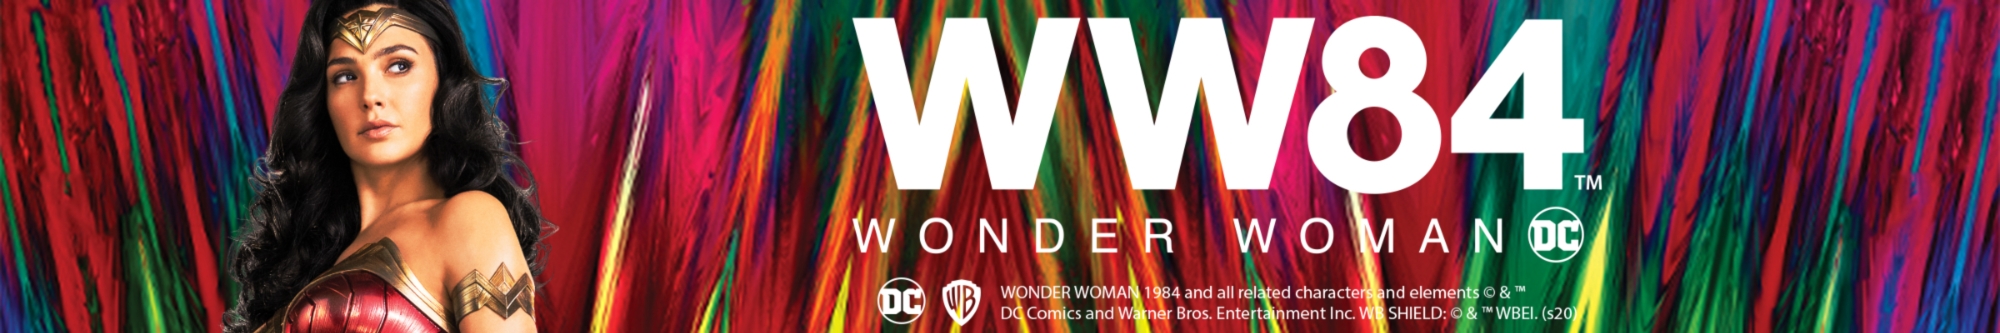 Showroom - Wonder Woman Movie